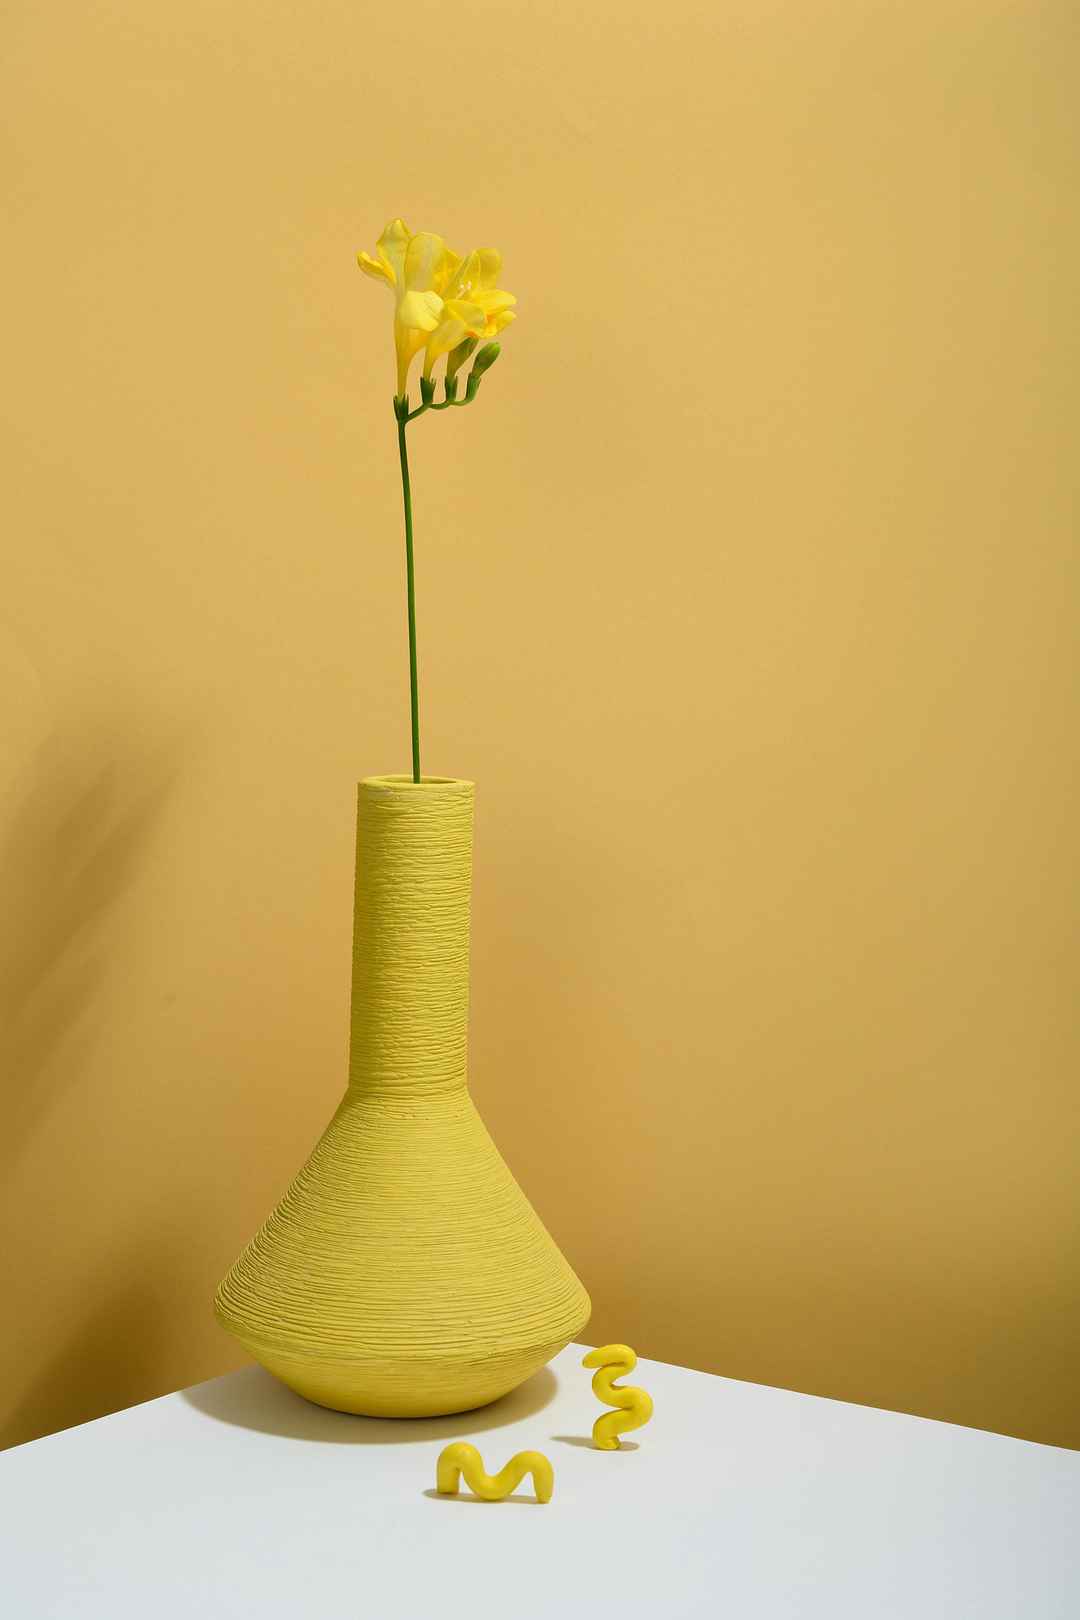 橙黄色花瓶插花壁纸图片